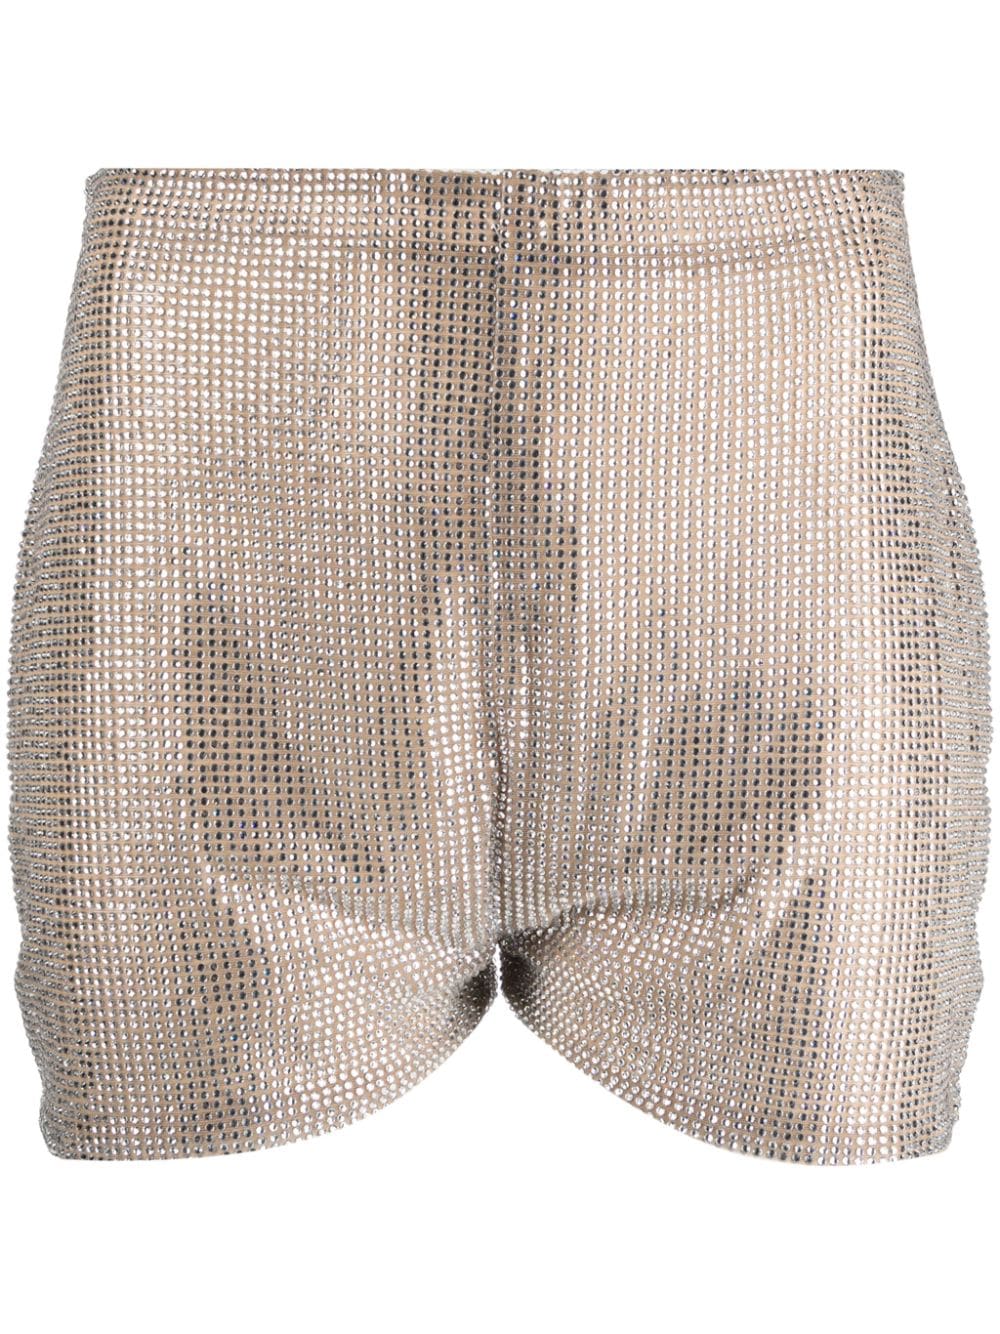 rhinestone-embellished high-waist shorts